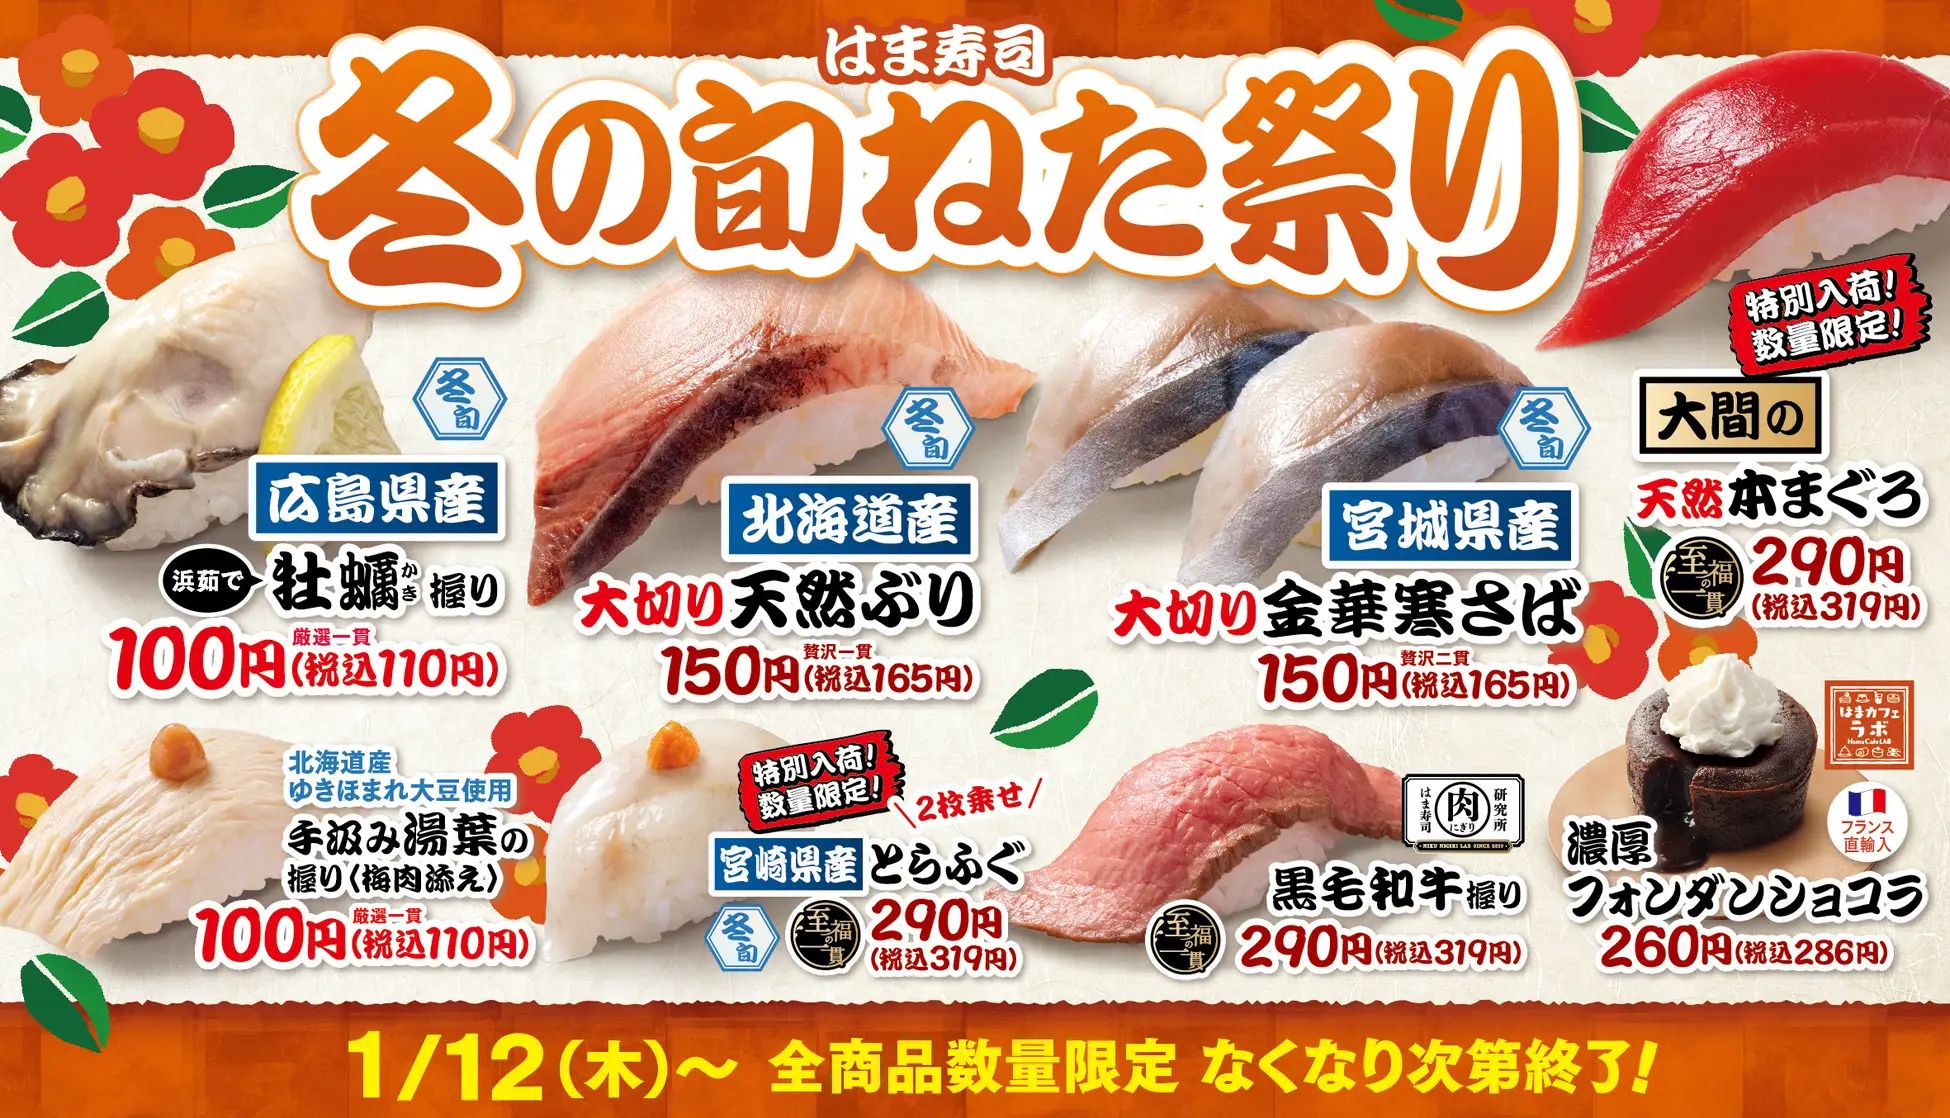 「はま寿司 冬の旬ねた祭り」